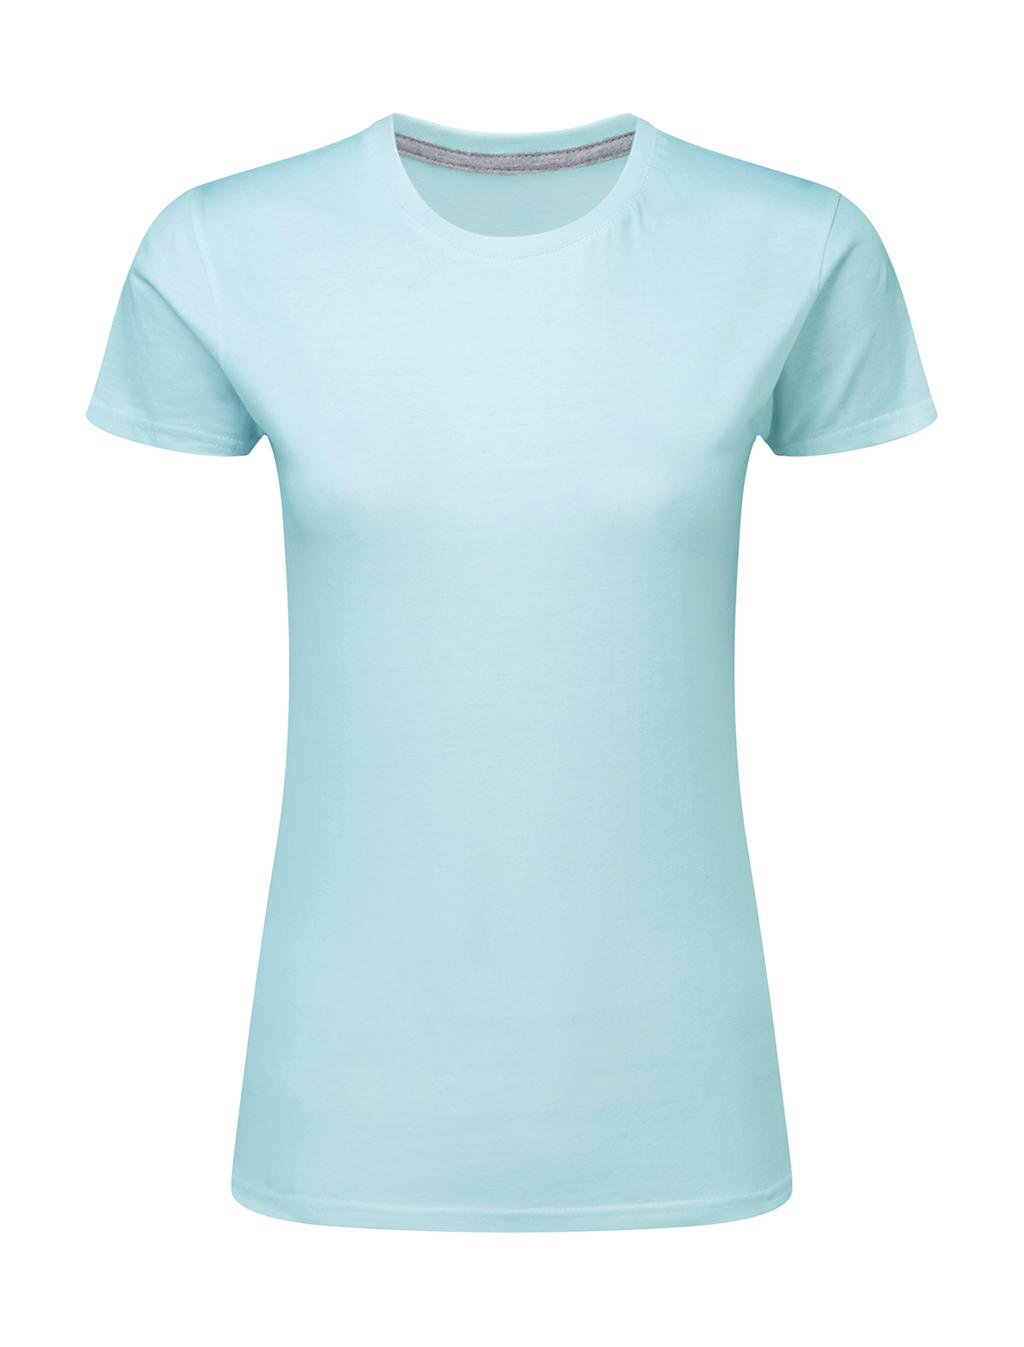 Dokonale potlačiteľné dámske tričko bez štítku - angel blue